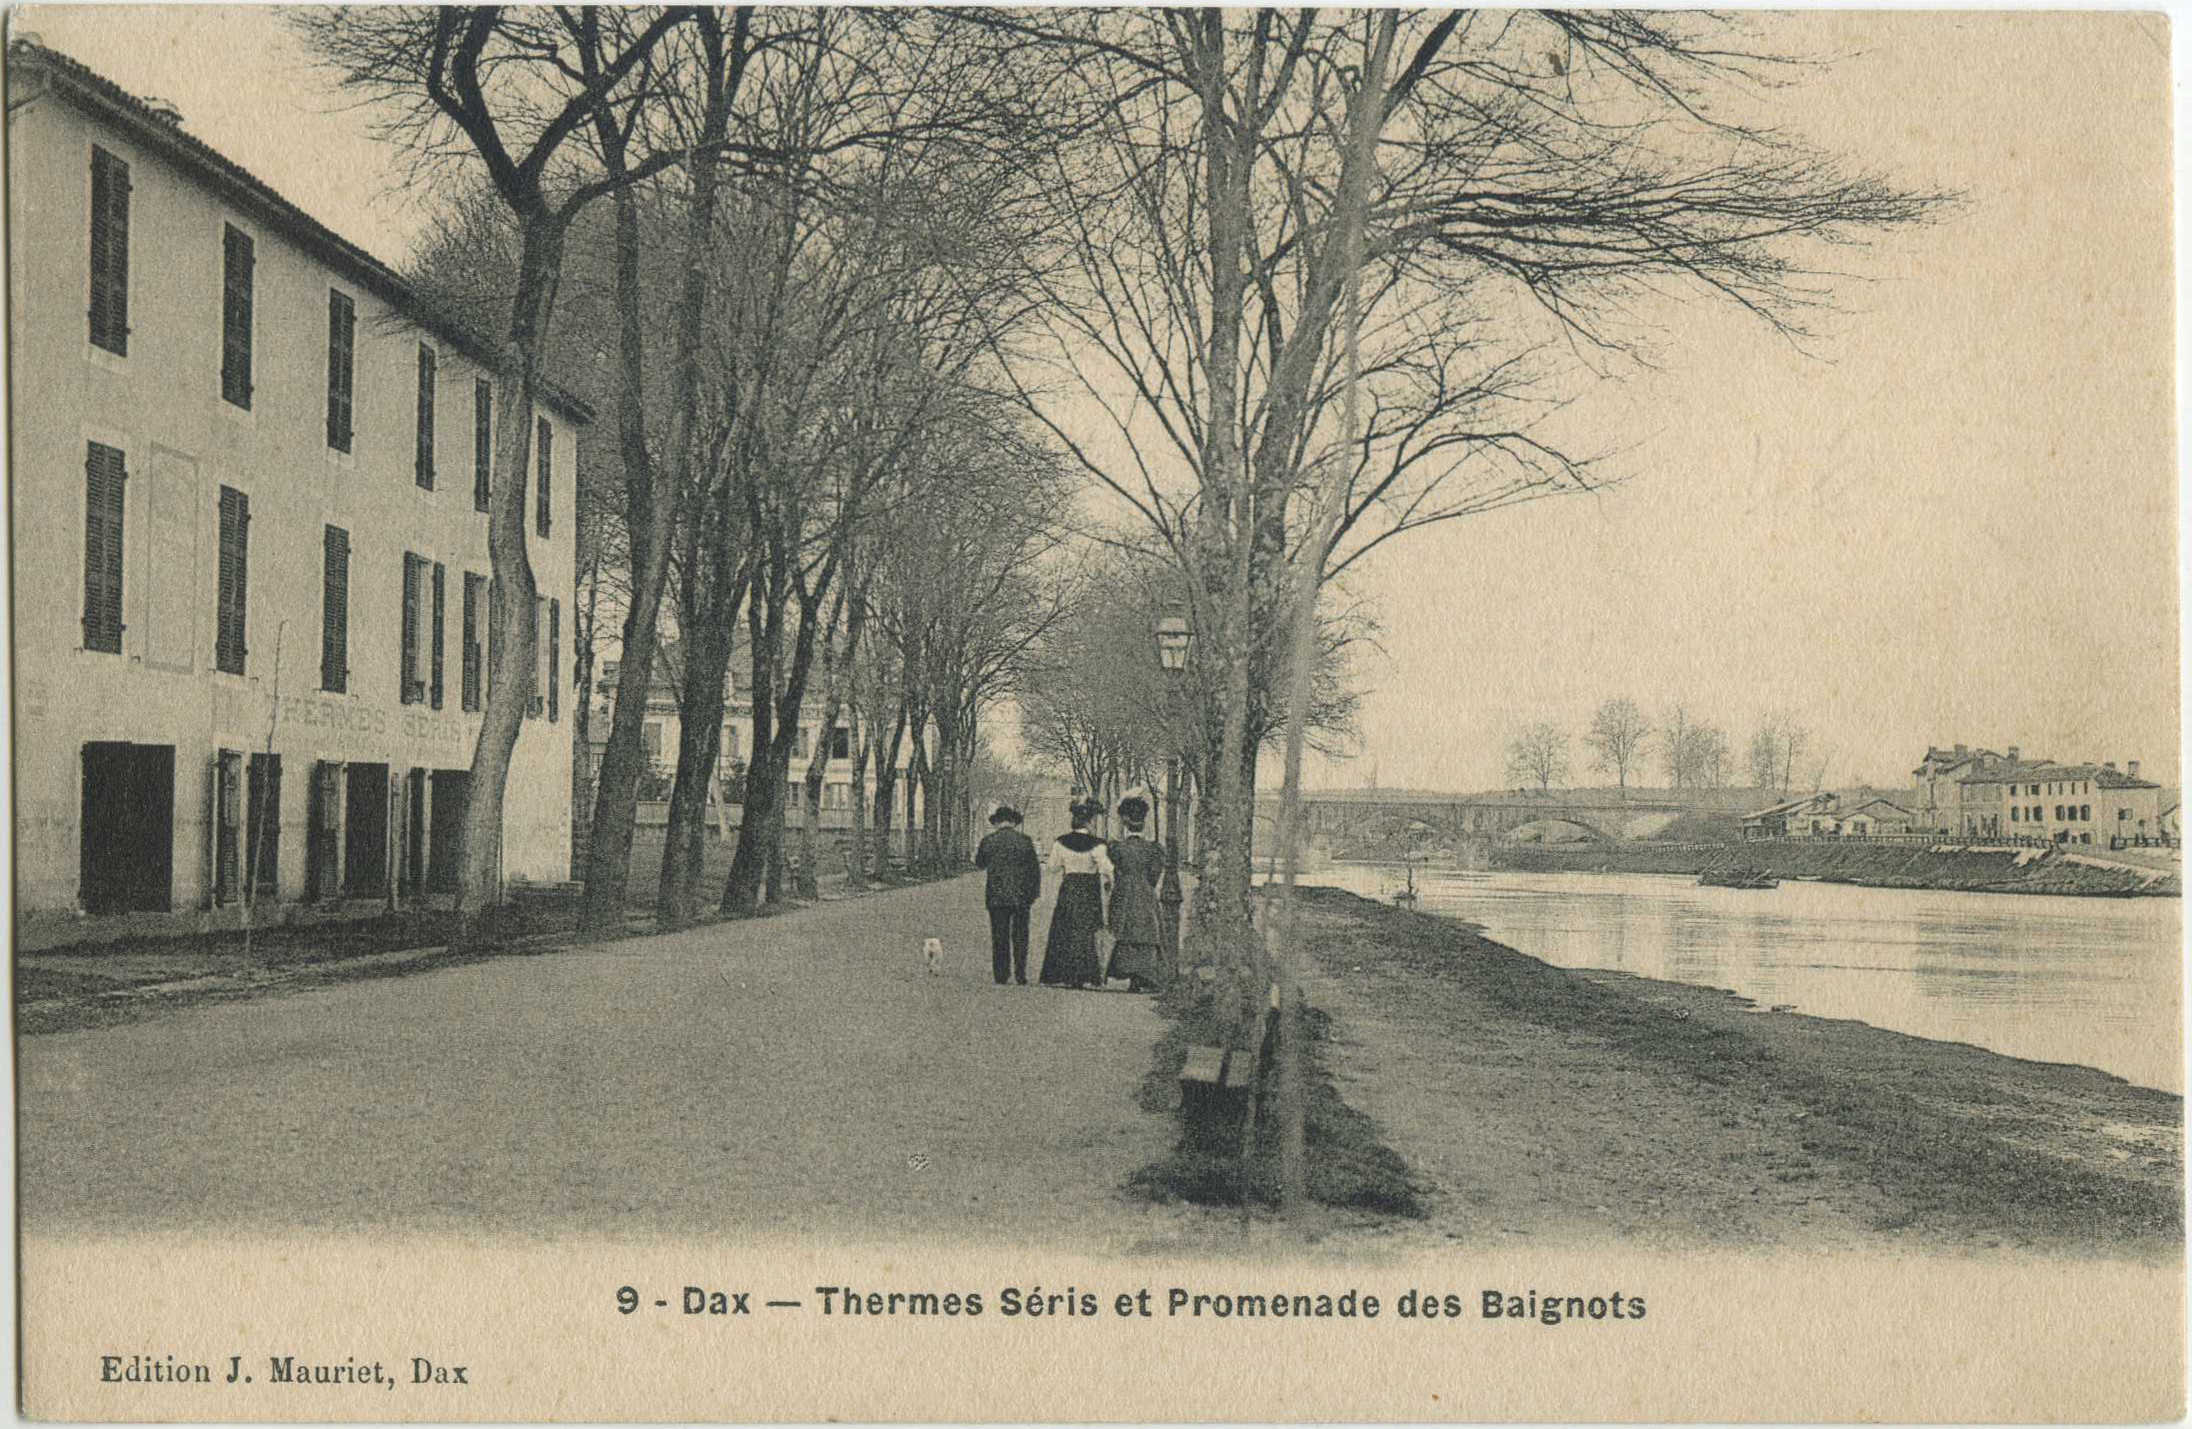 Dax - Thermes Séris et Promenade des Baignots